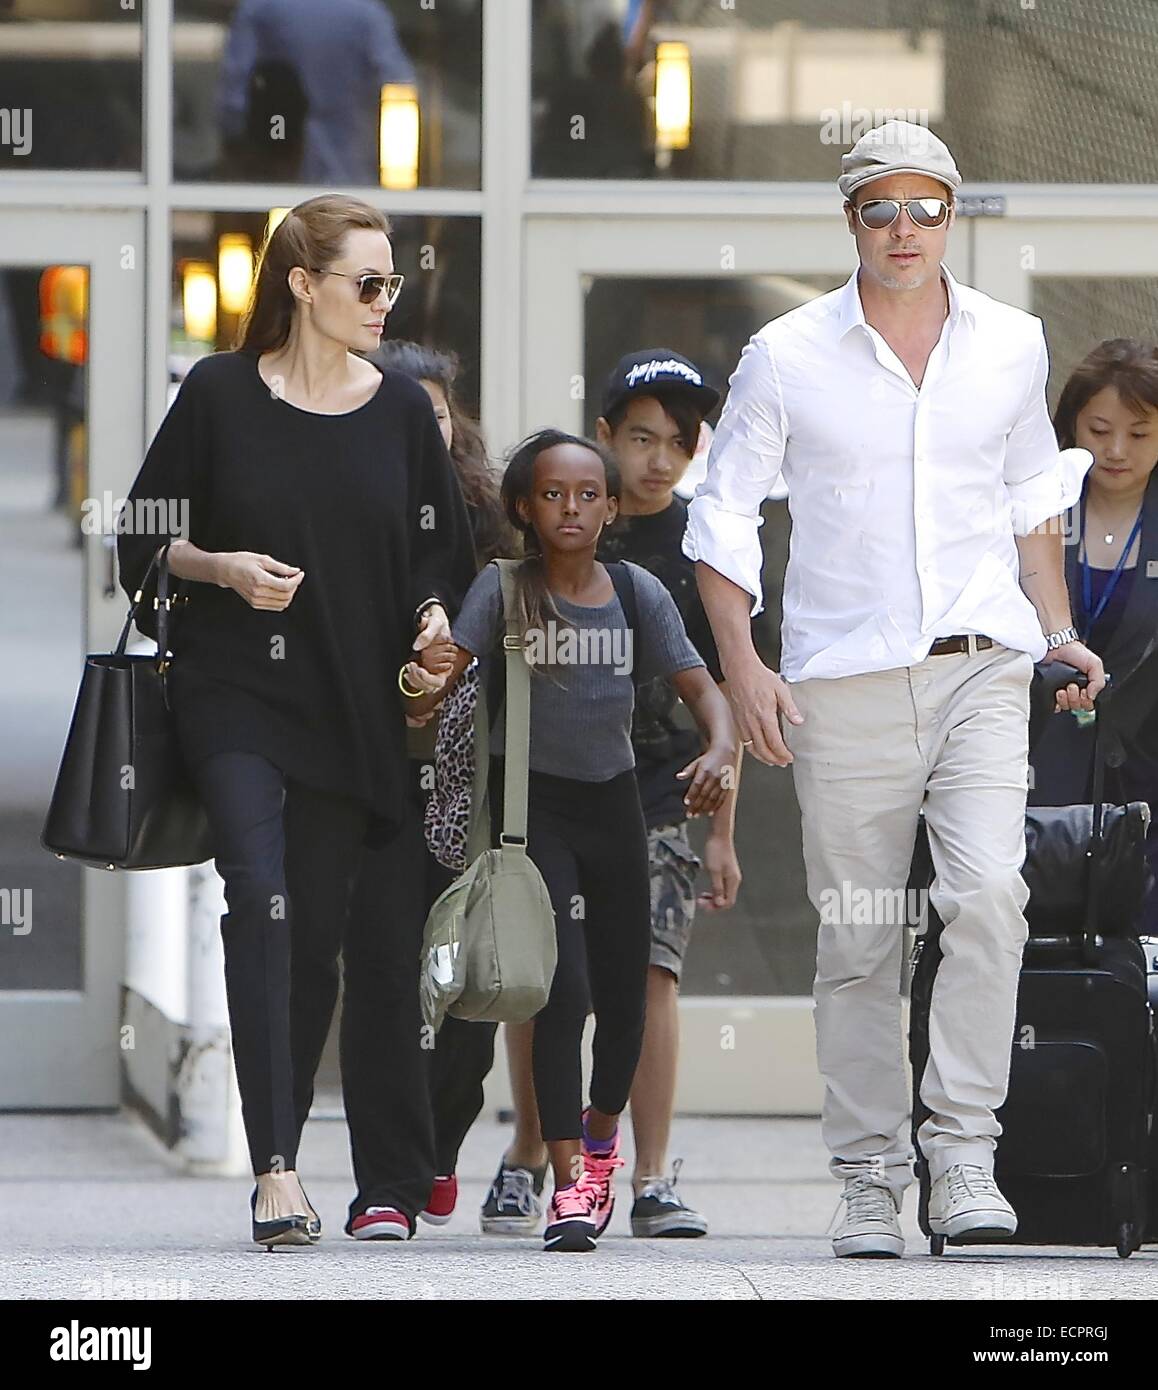 Brad Pitt et Angelina Jolie arrivent à Los Angeles International (LAX) aéroport avec leurs enfants Maddox et Zahara avec : Angelina Jolie, Brad Pitt, Maddox Jolie-Pitt Zahara Jolie-Pitt,où : Los Angeles, California, United States Quand : 14 Juin 2014 Banque D'Images